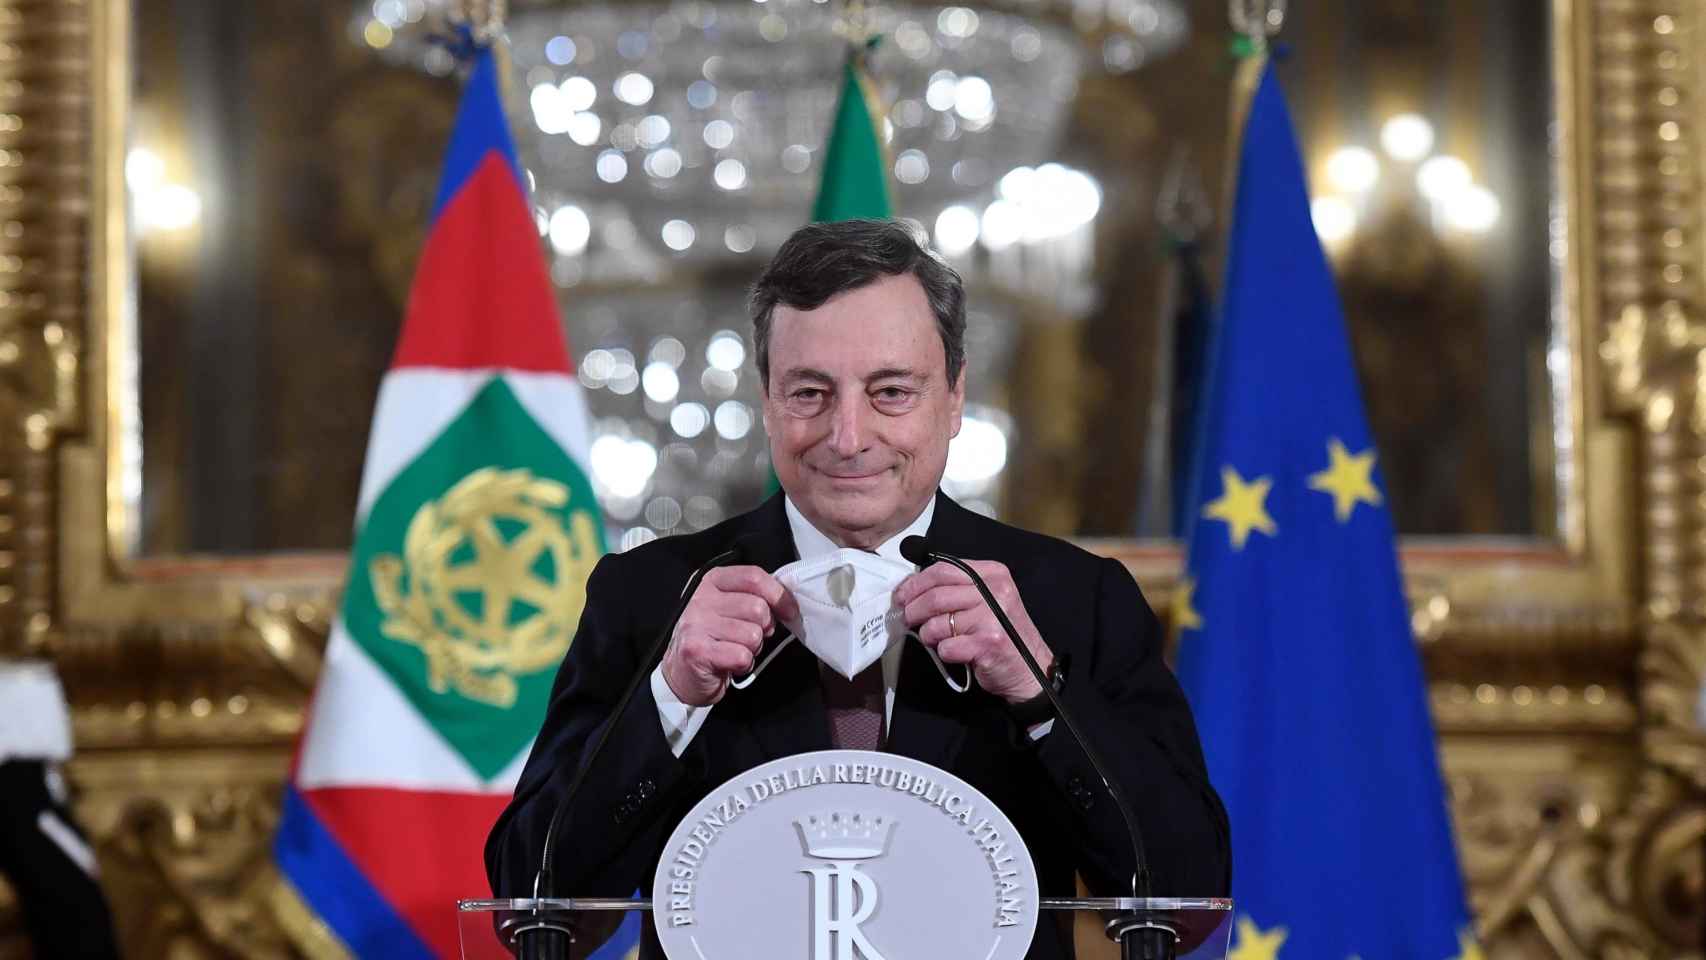 El primer ministro designado italiano, Mario Draghi, se dirige a los medios de comunicación para anunciar su lista de ministros después de una reunión con el presidente italiano Mattarella.